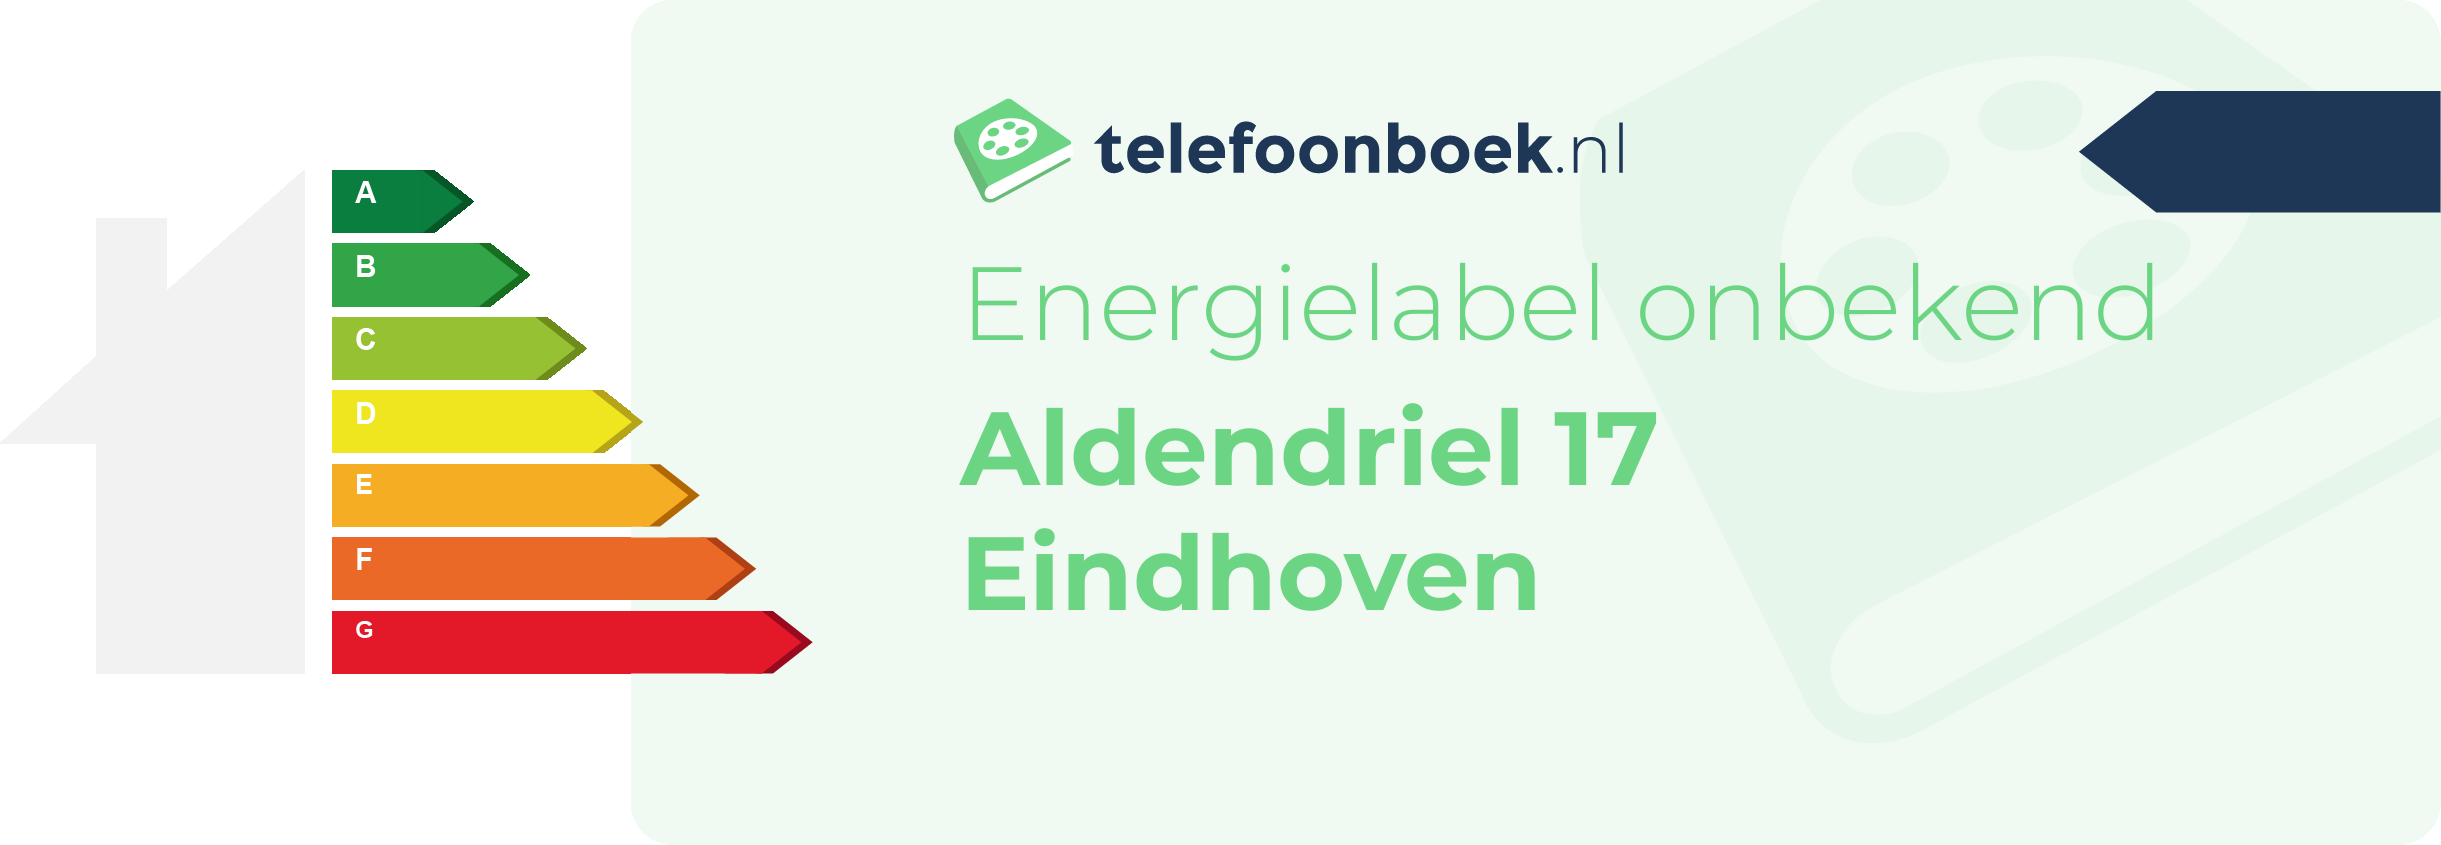 Energielabel Aldendriel 17 Eindhoven